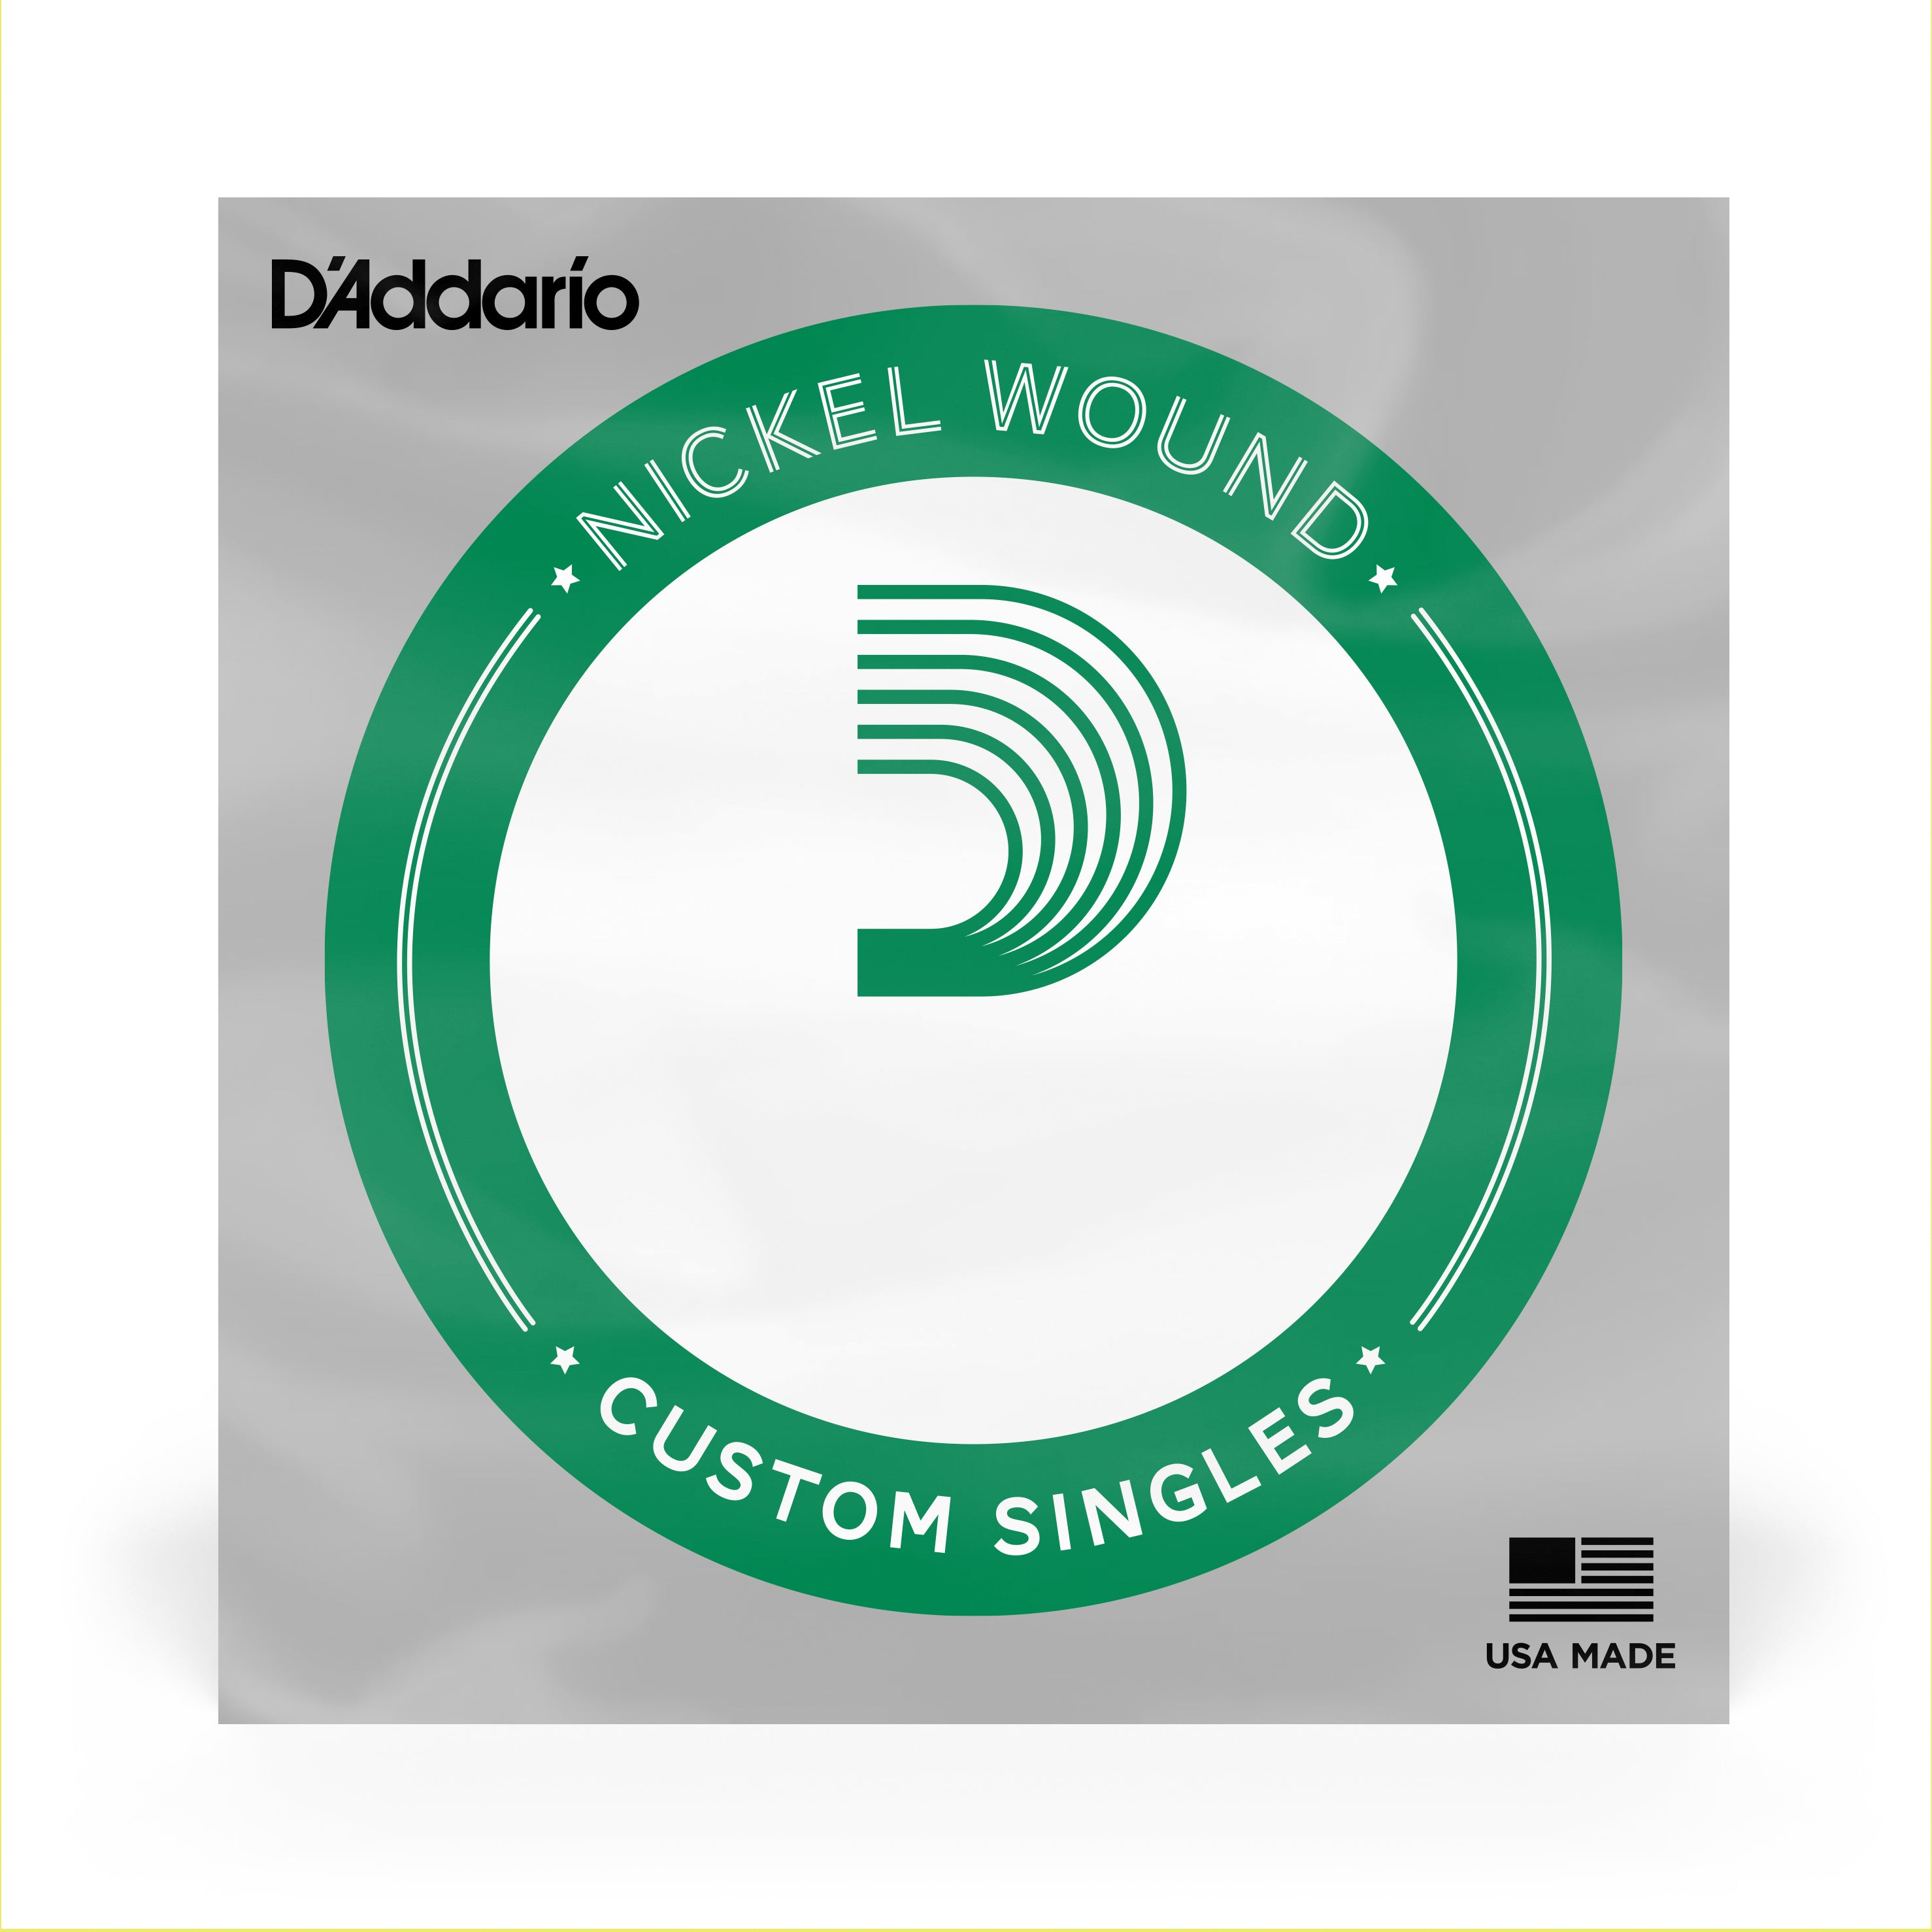 D'Addario XLB075 Nickel Wound XL Bass Single String .075 Long Scale